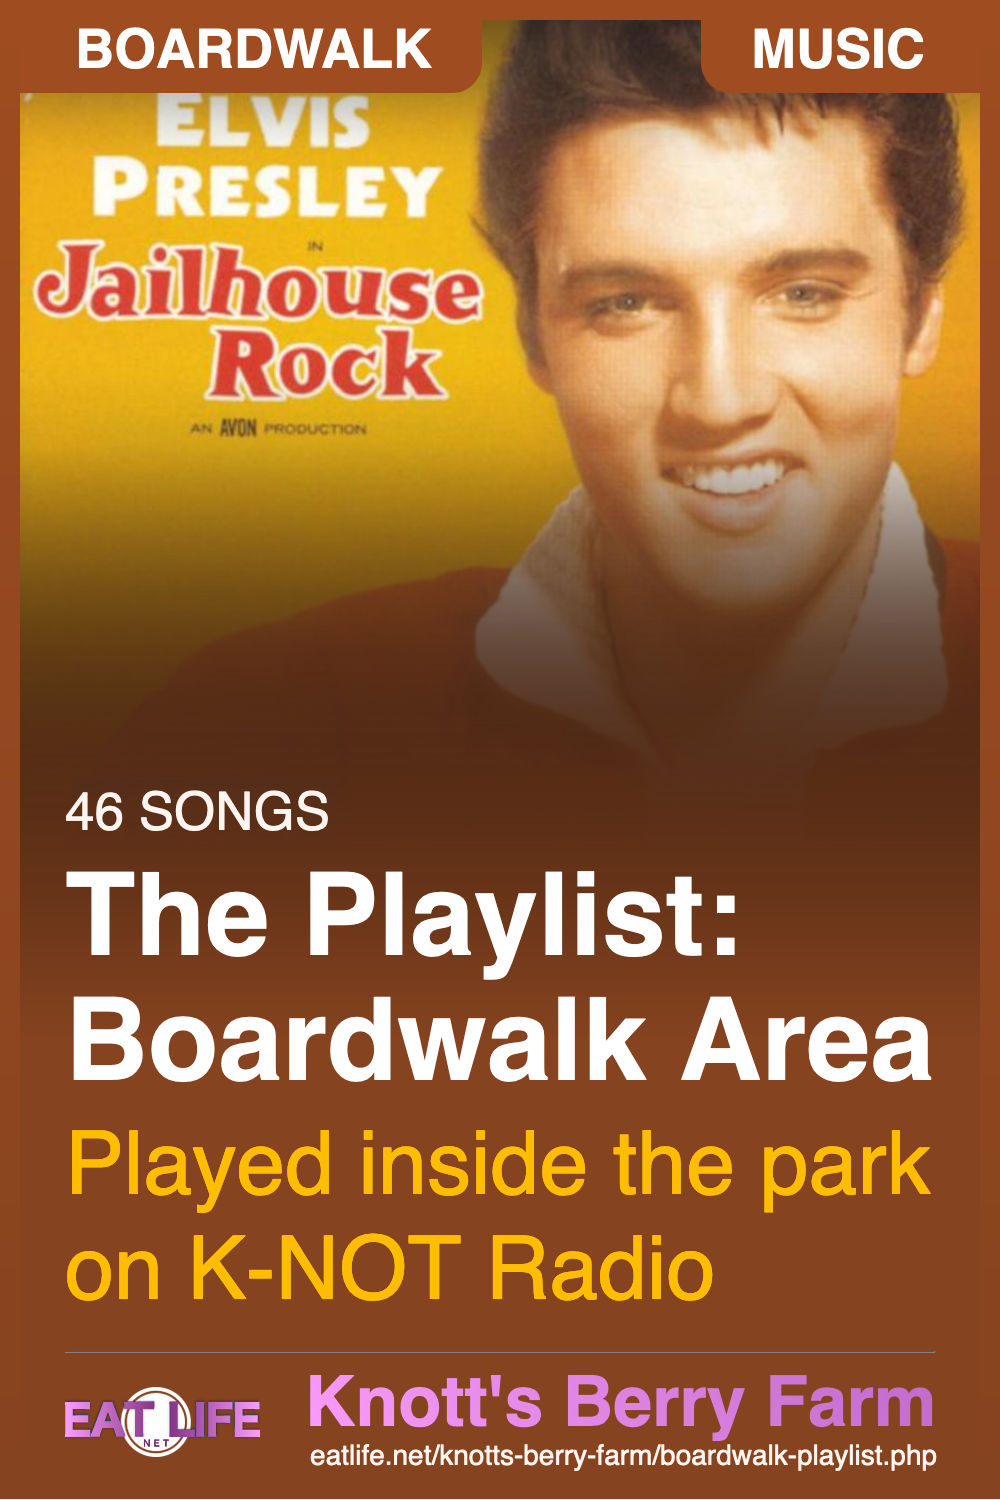 Boardwalk Playlist